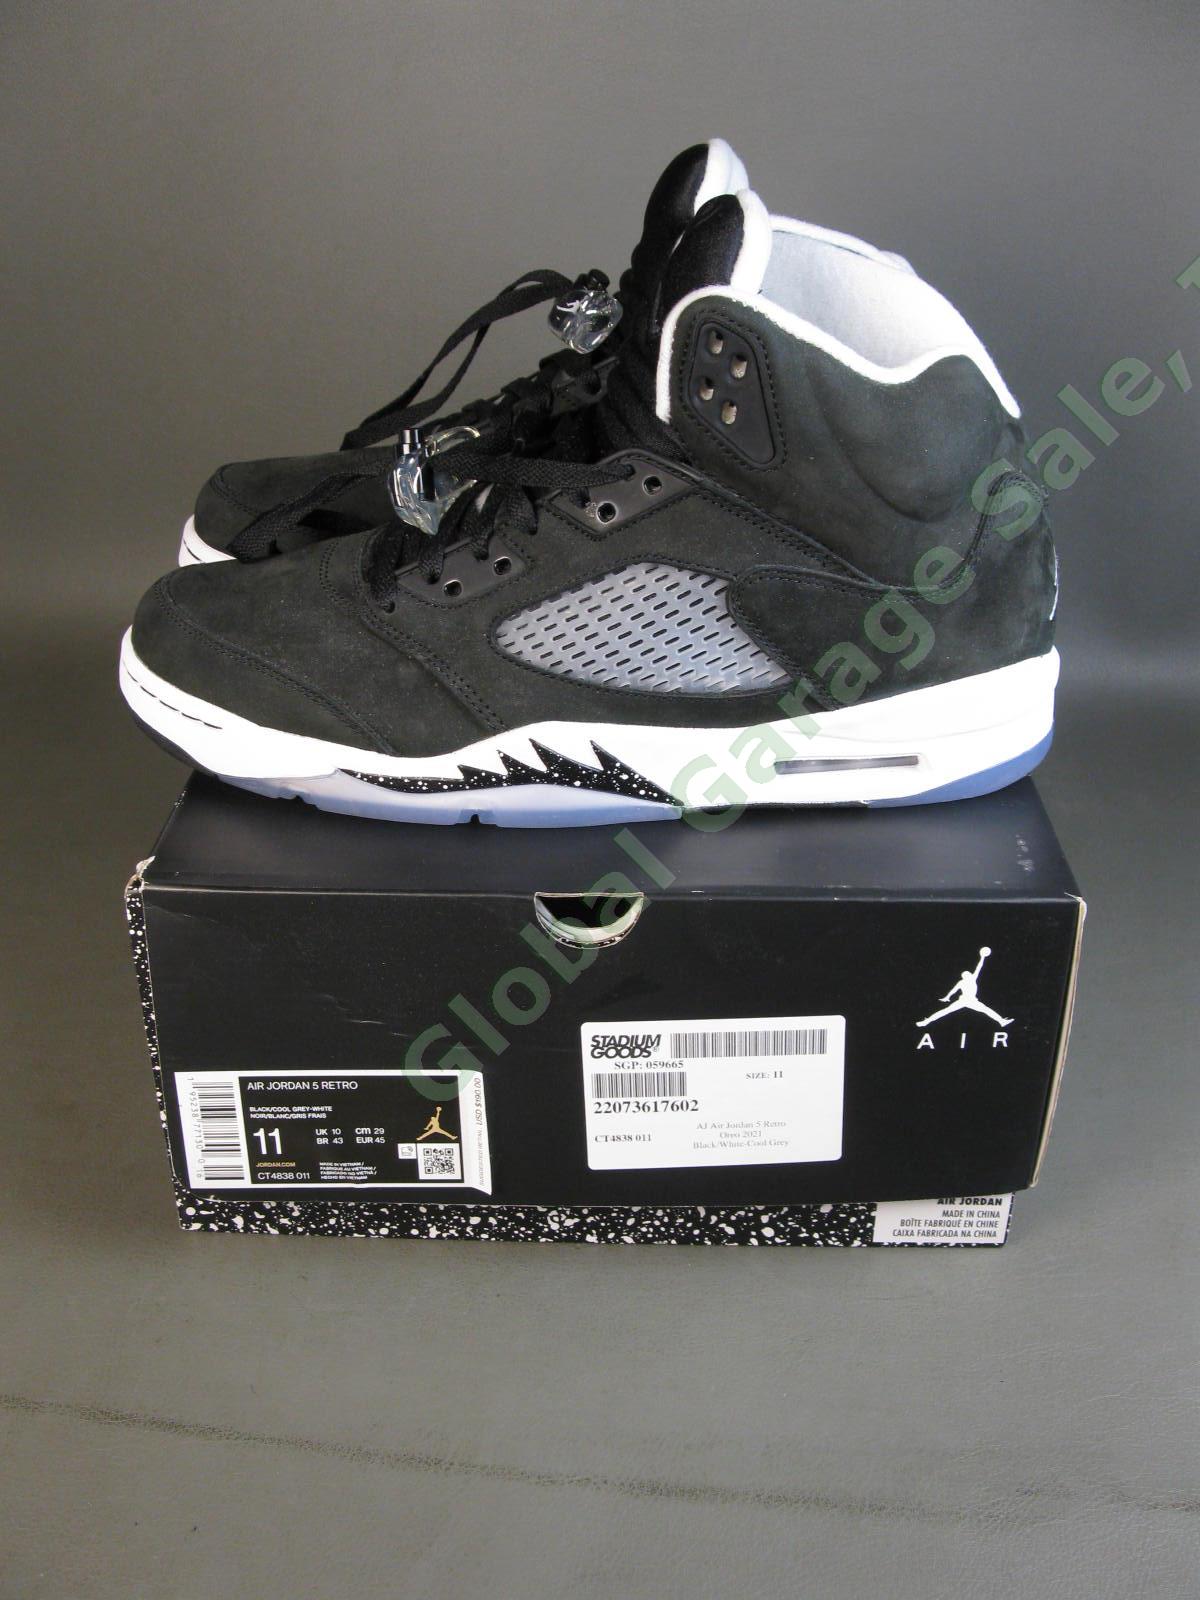 Nike Air Jordan AJ Retro 5 Moonlight Oreo Cookie CT4838 011 Black White US 11 NR